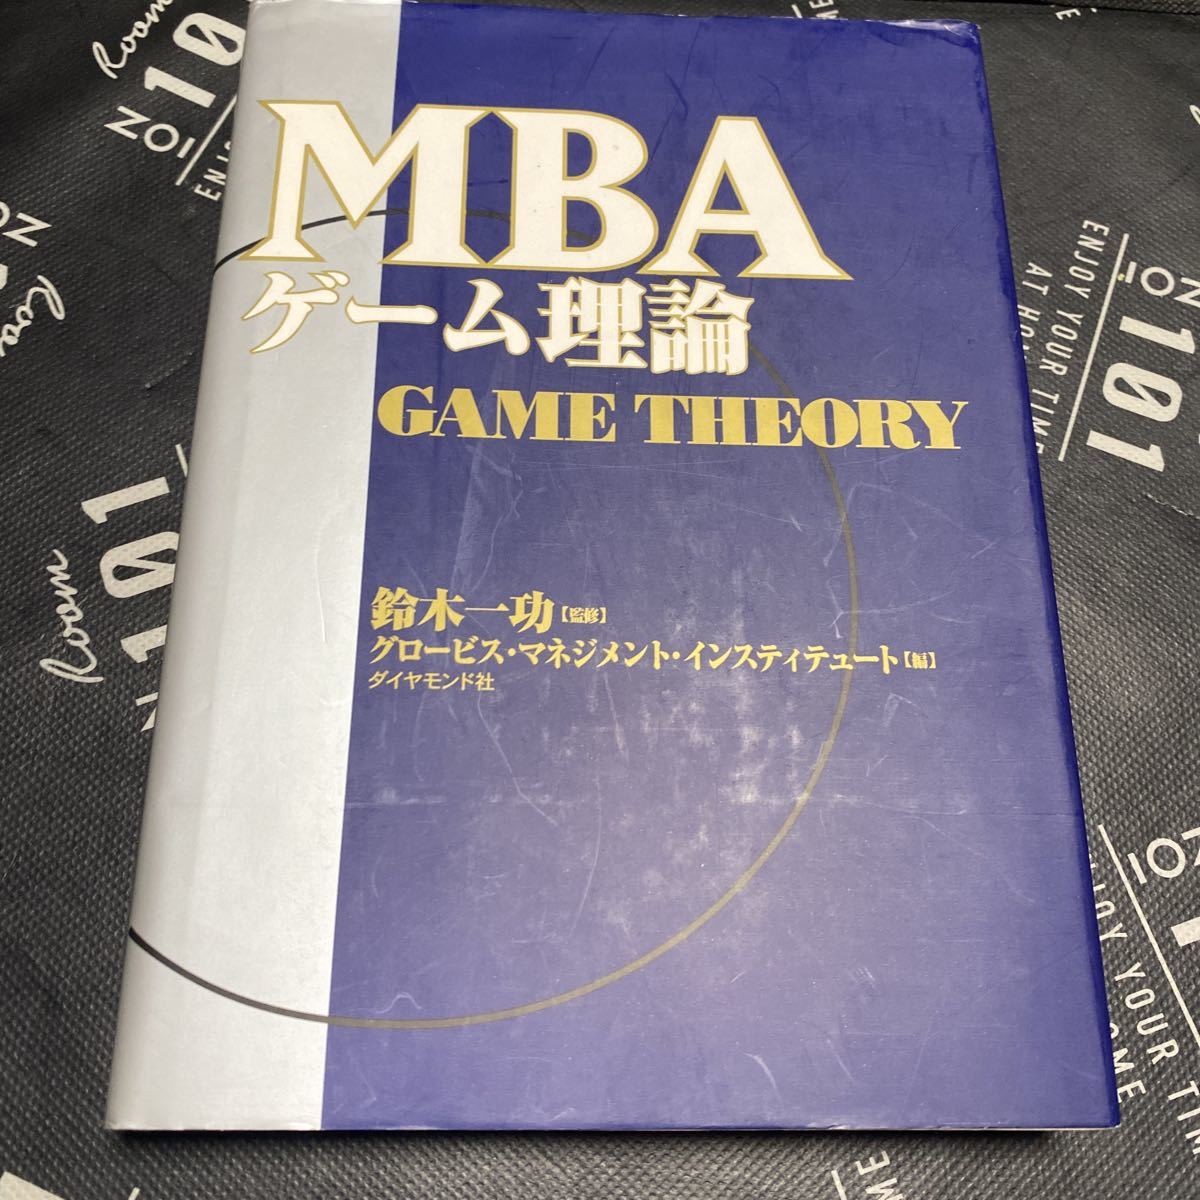 MBA ゲーム理論 - ビジネス